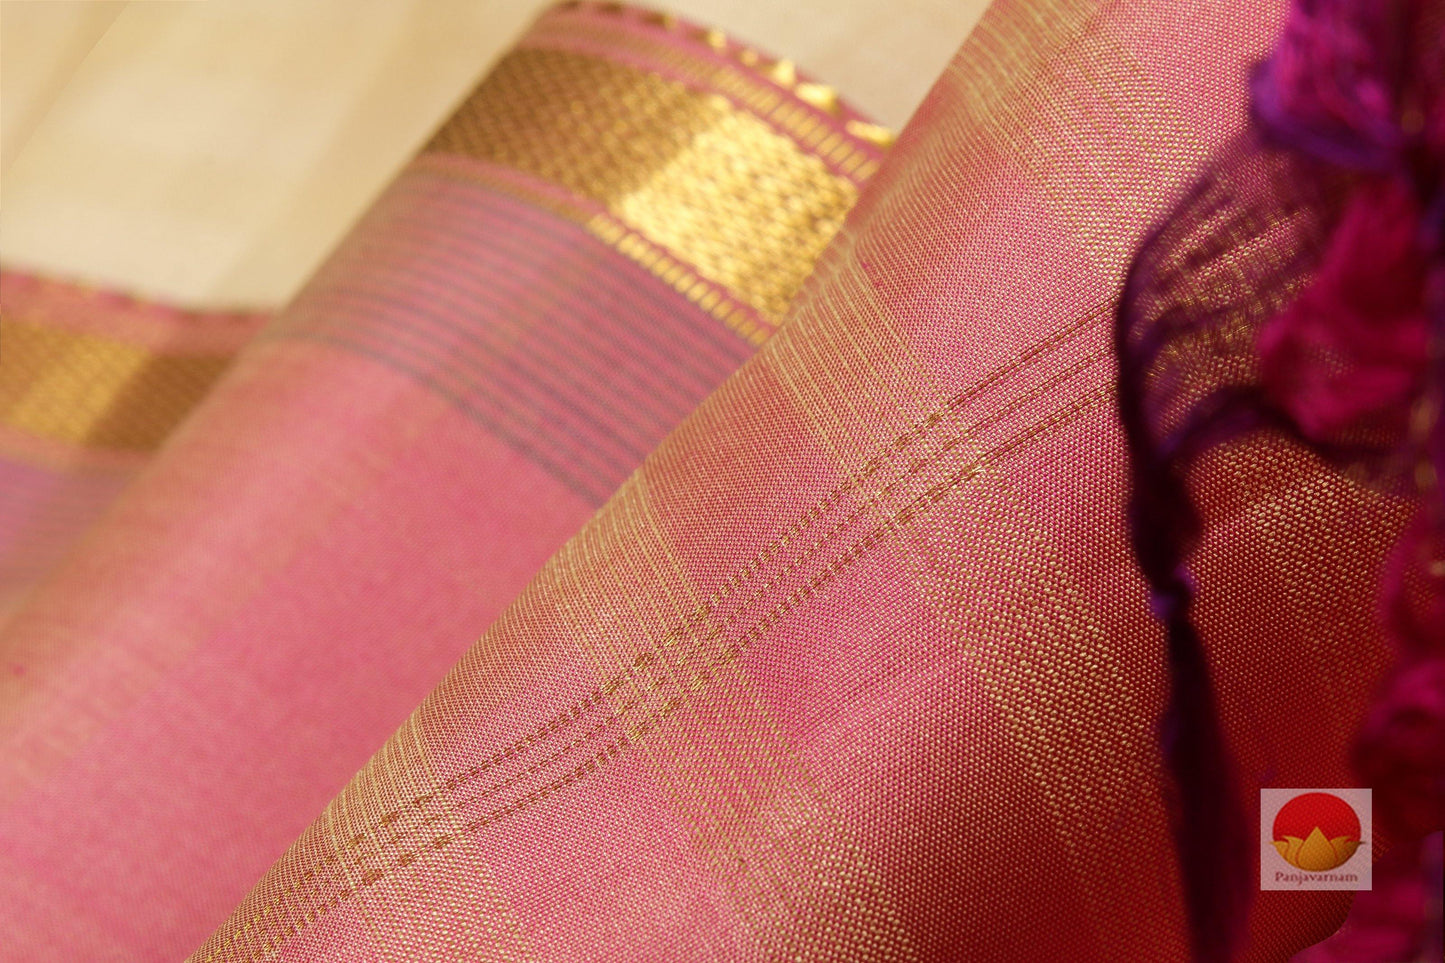 Lite Weight Handwoven Pure Silk Kanjivaram Saree - PVSM G3 - Silk Sari - Panjavarnam